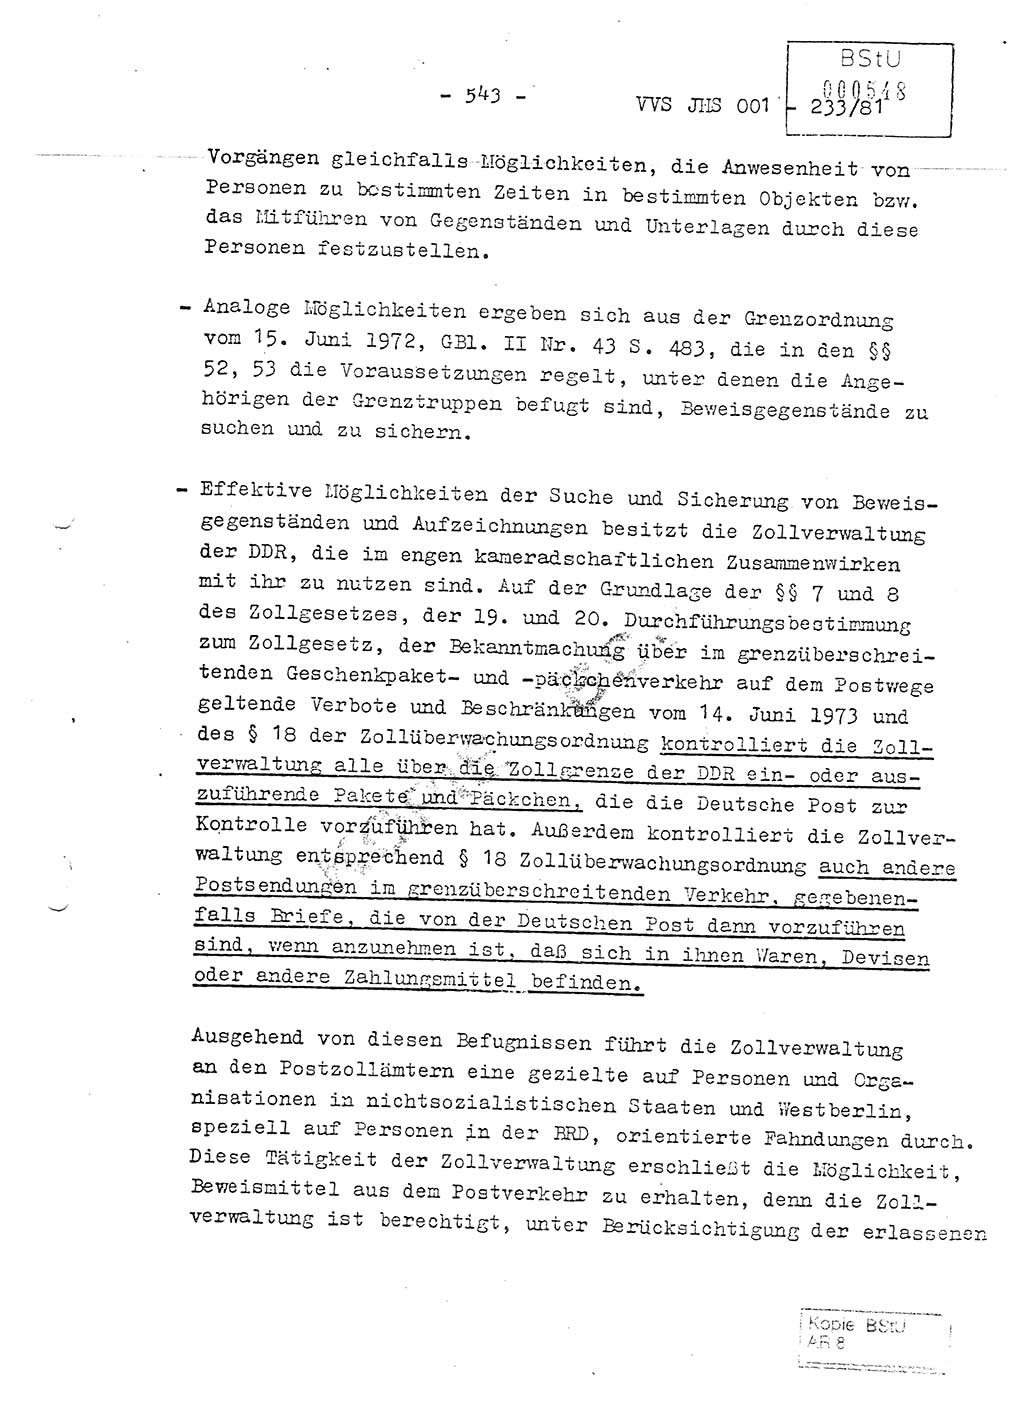 Dissertation Oberstleutnant Horst Zank (JHS), Oberstleutnant Dr. Karl-Heinz Knoblauch (JHS), Oberstleutnant Gustav-Adolf Kowalewski (HA Ⅸ), Oberstleutnant Wolfgang Plötner (HA Ⅸ), Ministerium für Staatssicherheit (MfS) [Deutsche Demokratische Republik (DDR)], Juristische Hochschule (JHS), Vertrauliche Verschlußsache (VVS) o001-233/81, Potsdam 1981, Blatt 543 (Diss. MfS DDR JHS VVS o001-233/81 1981, Bl. 543)